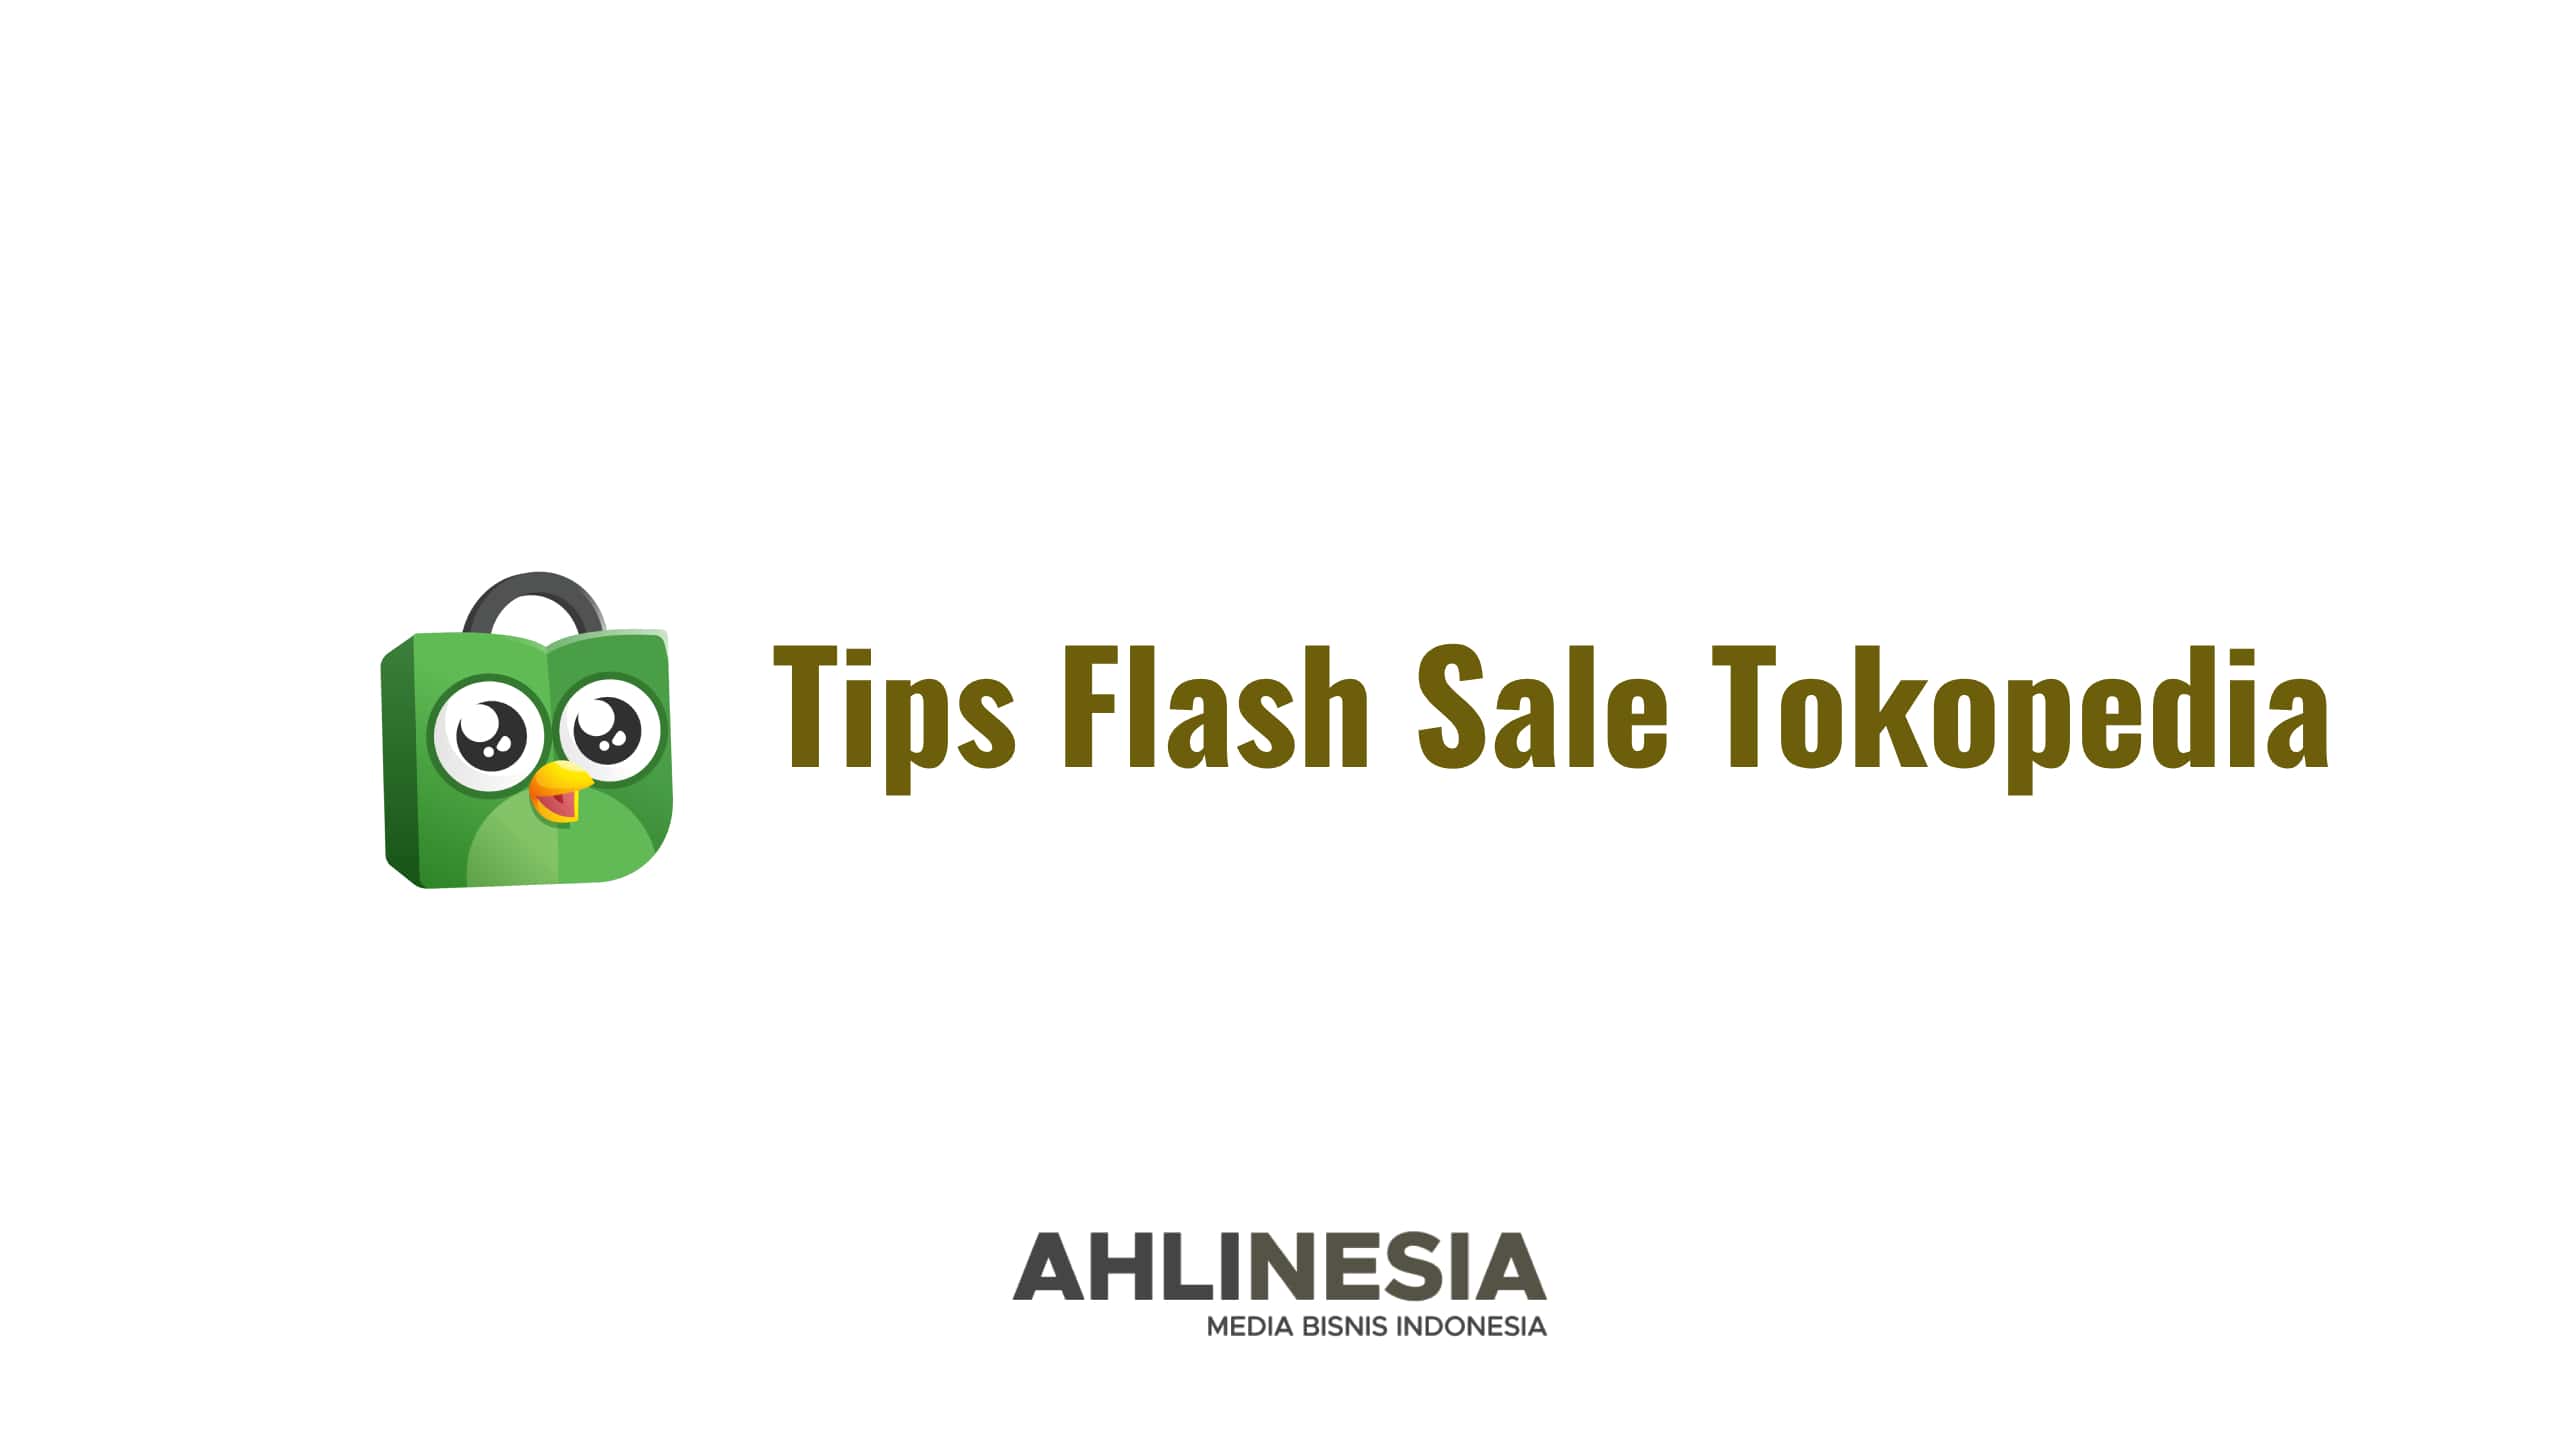 Tips flash sale tokopedia